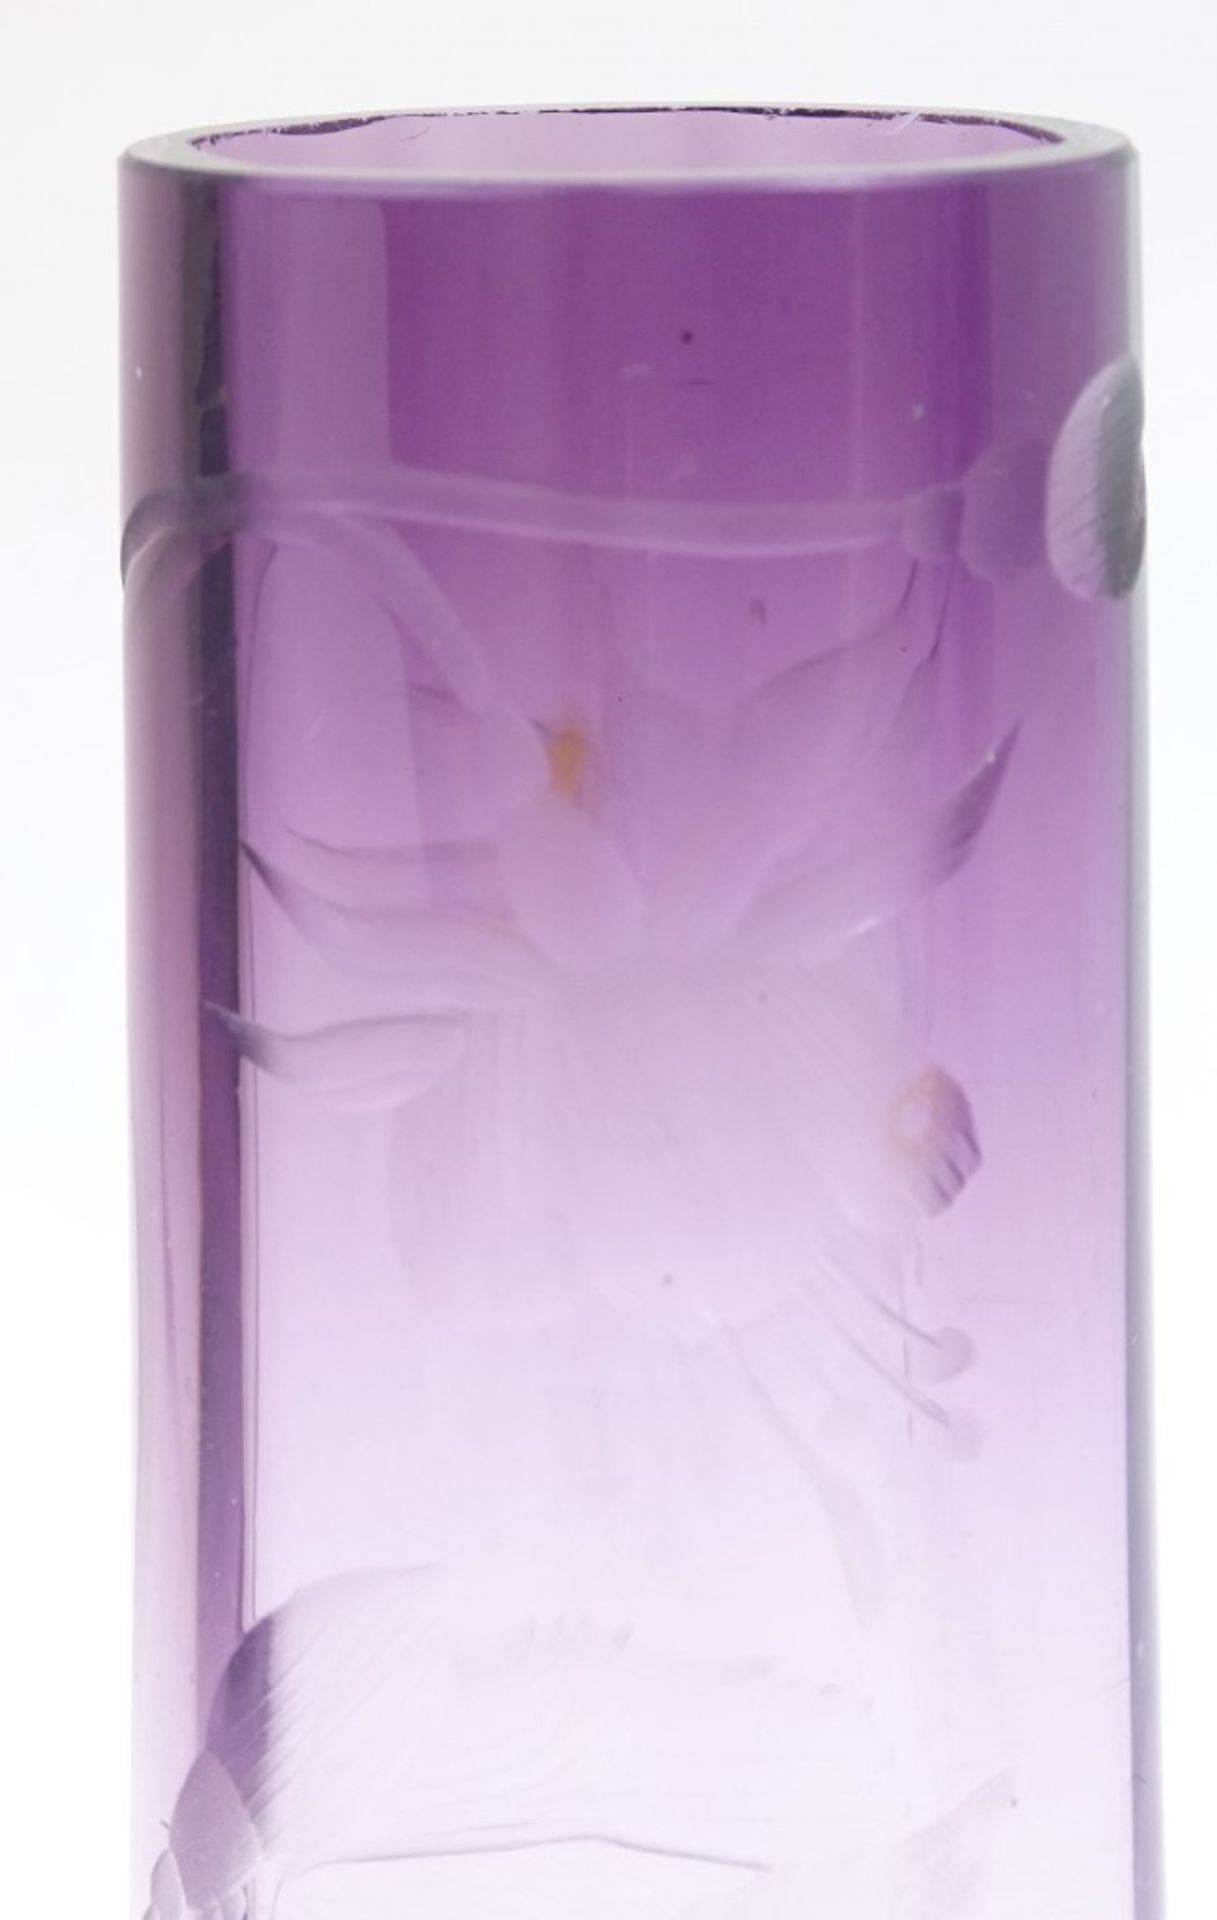 Kleine Vase, Jugendstil, geschliffenes Blumenmotiv, lila getönt, wohl Moser, H. 9,5 cm, leicht rein - Bild 2 aus 6